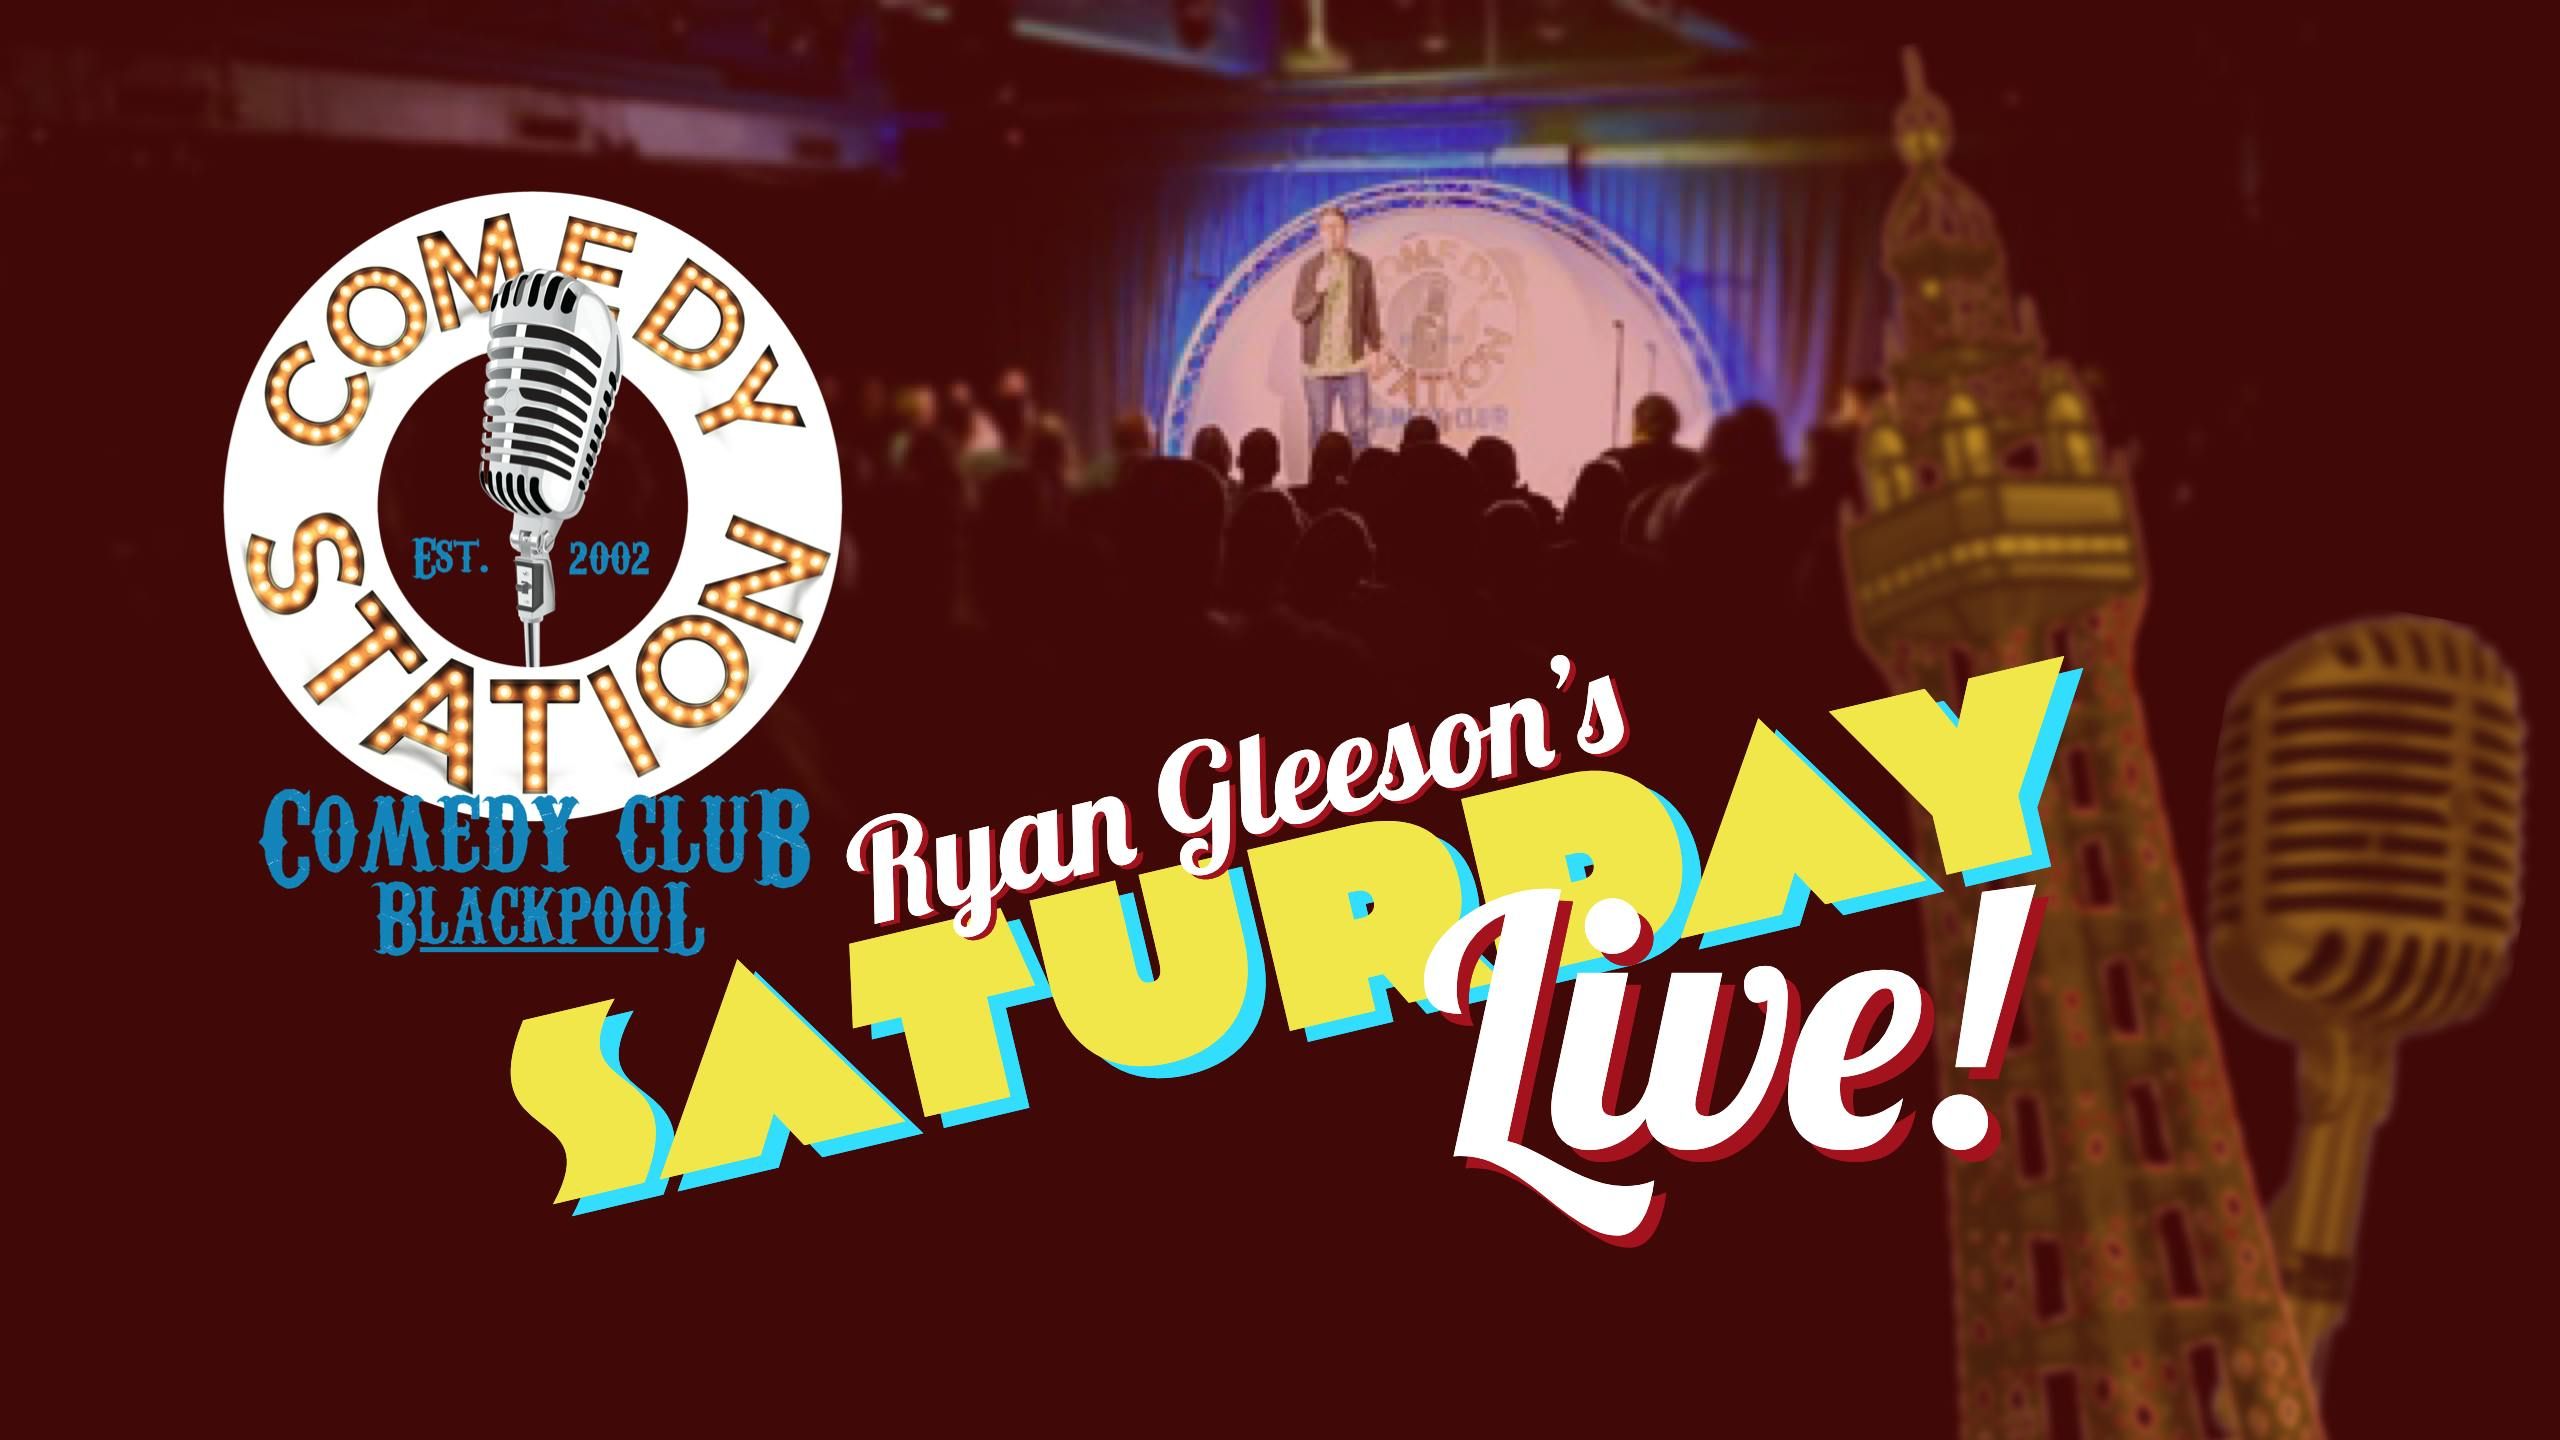 Imagen del tour: Boletos para la comedia stand-up en vivo del sábado de Ryan Gleeson